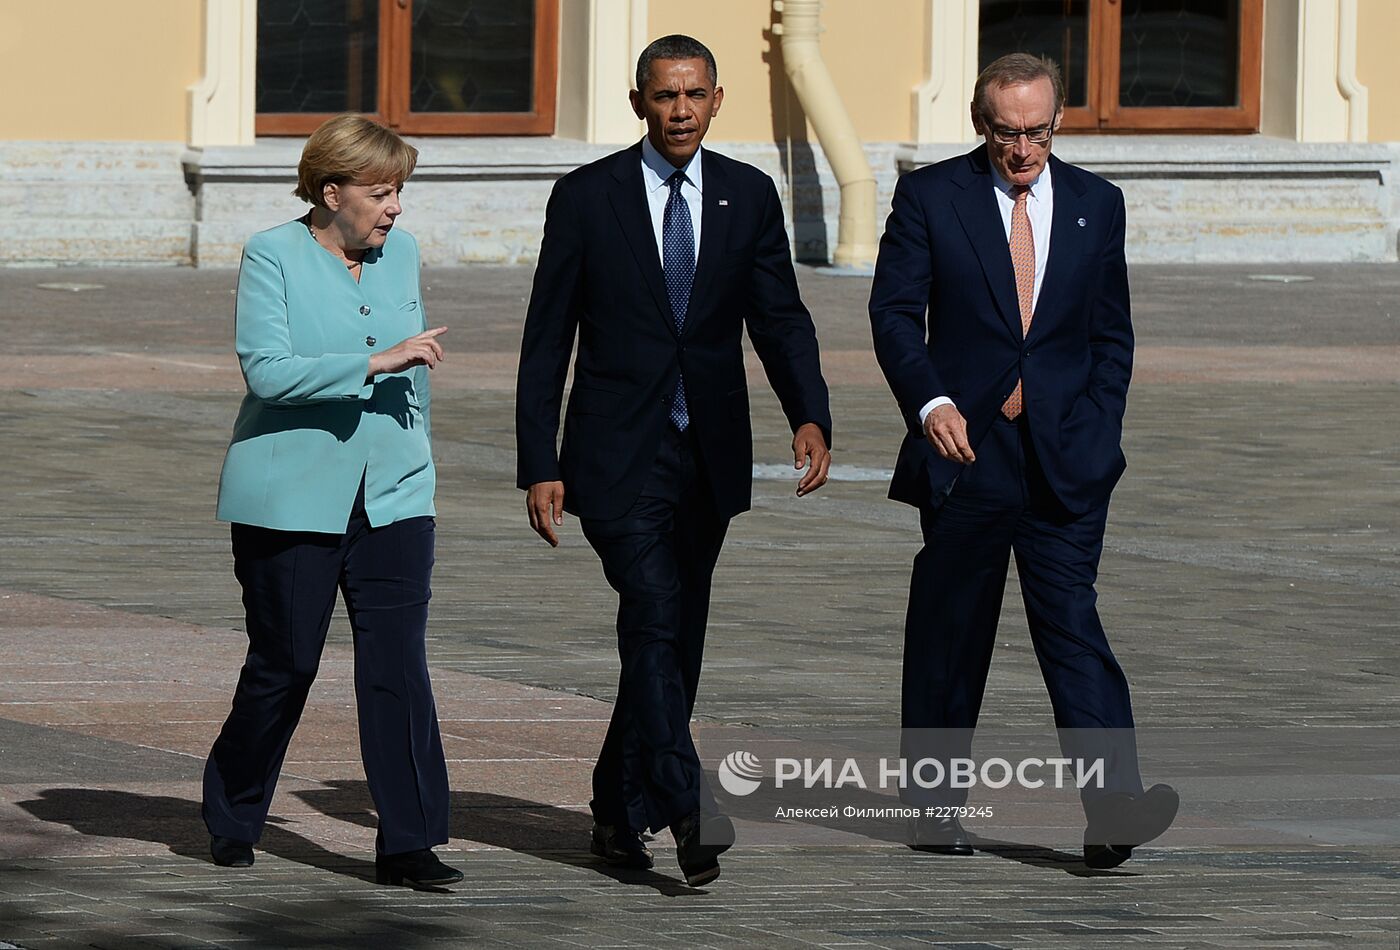 Официальное фотографирование участников саммита G20